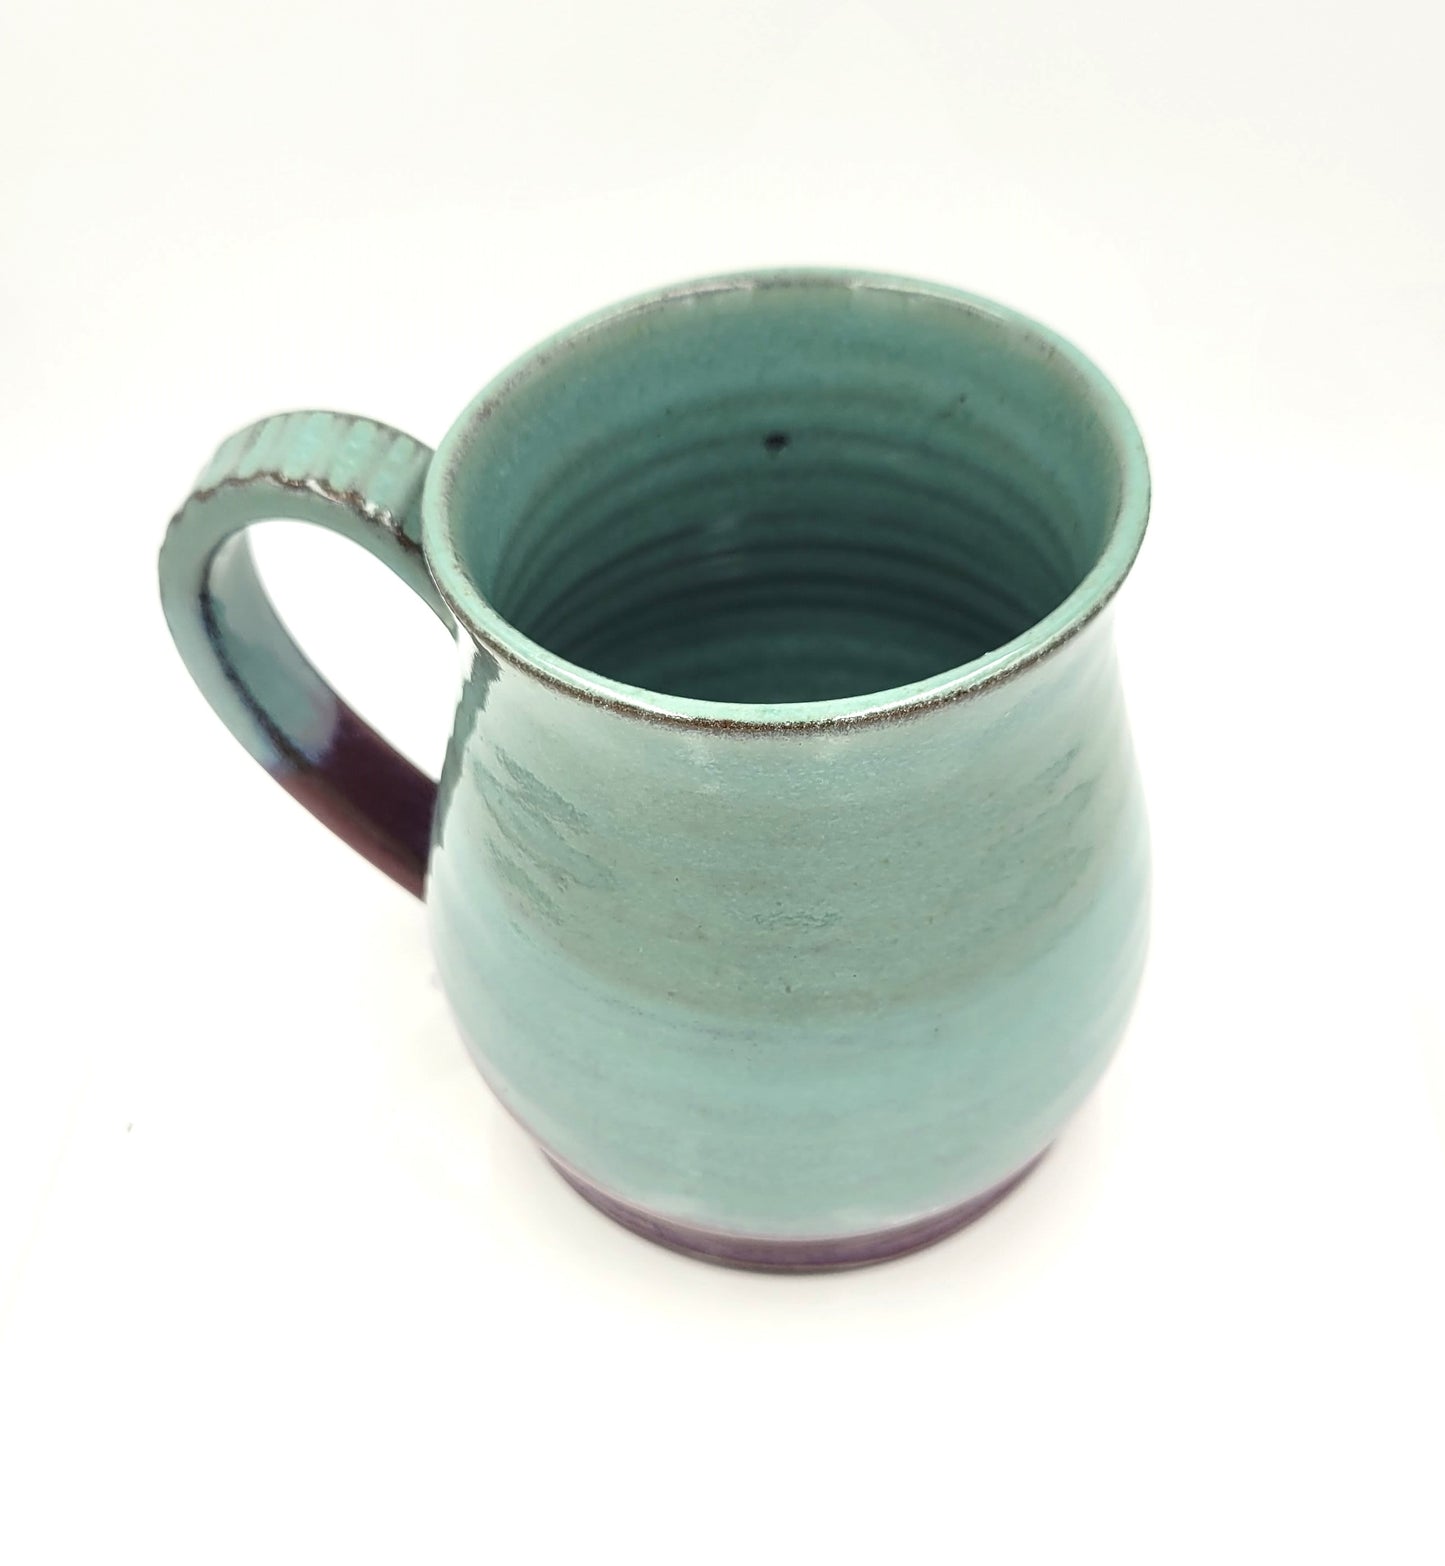 Handmade Pottery Mug.  Teal and Raspberry glaze